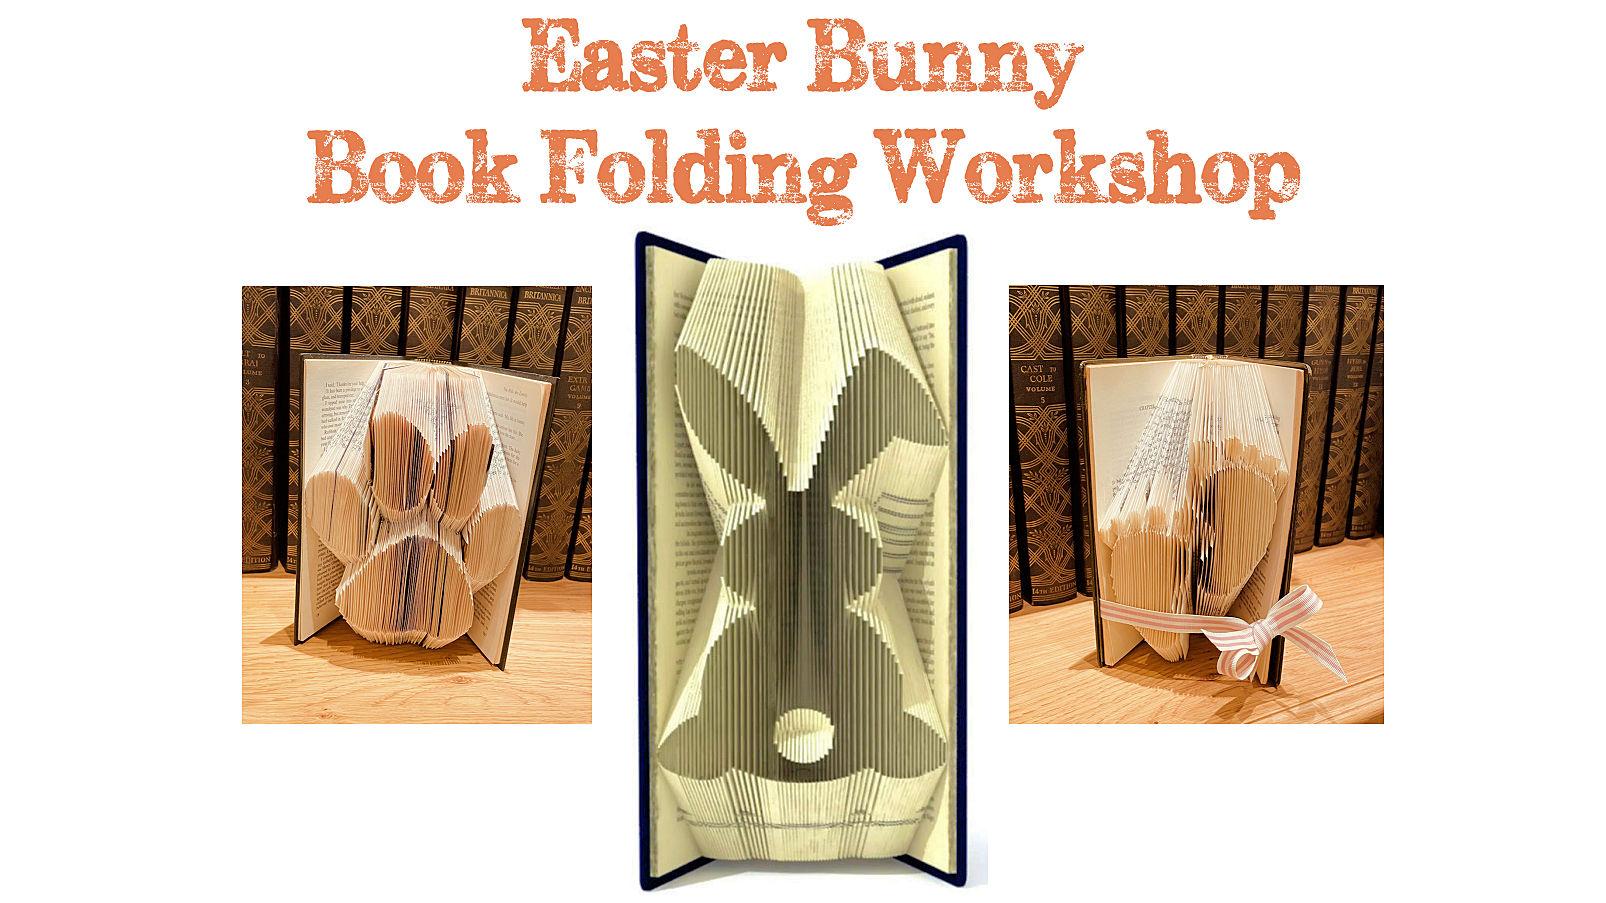 Book folding workshop